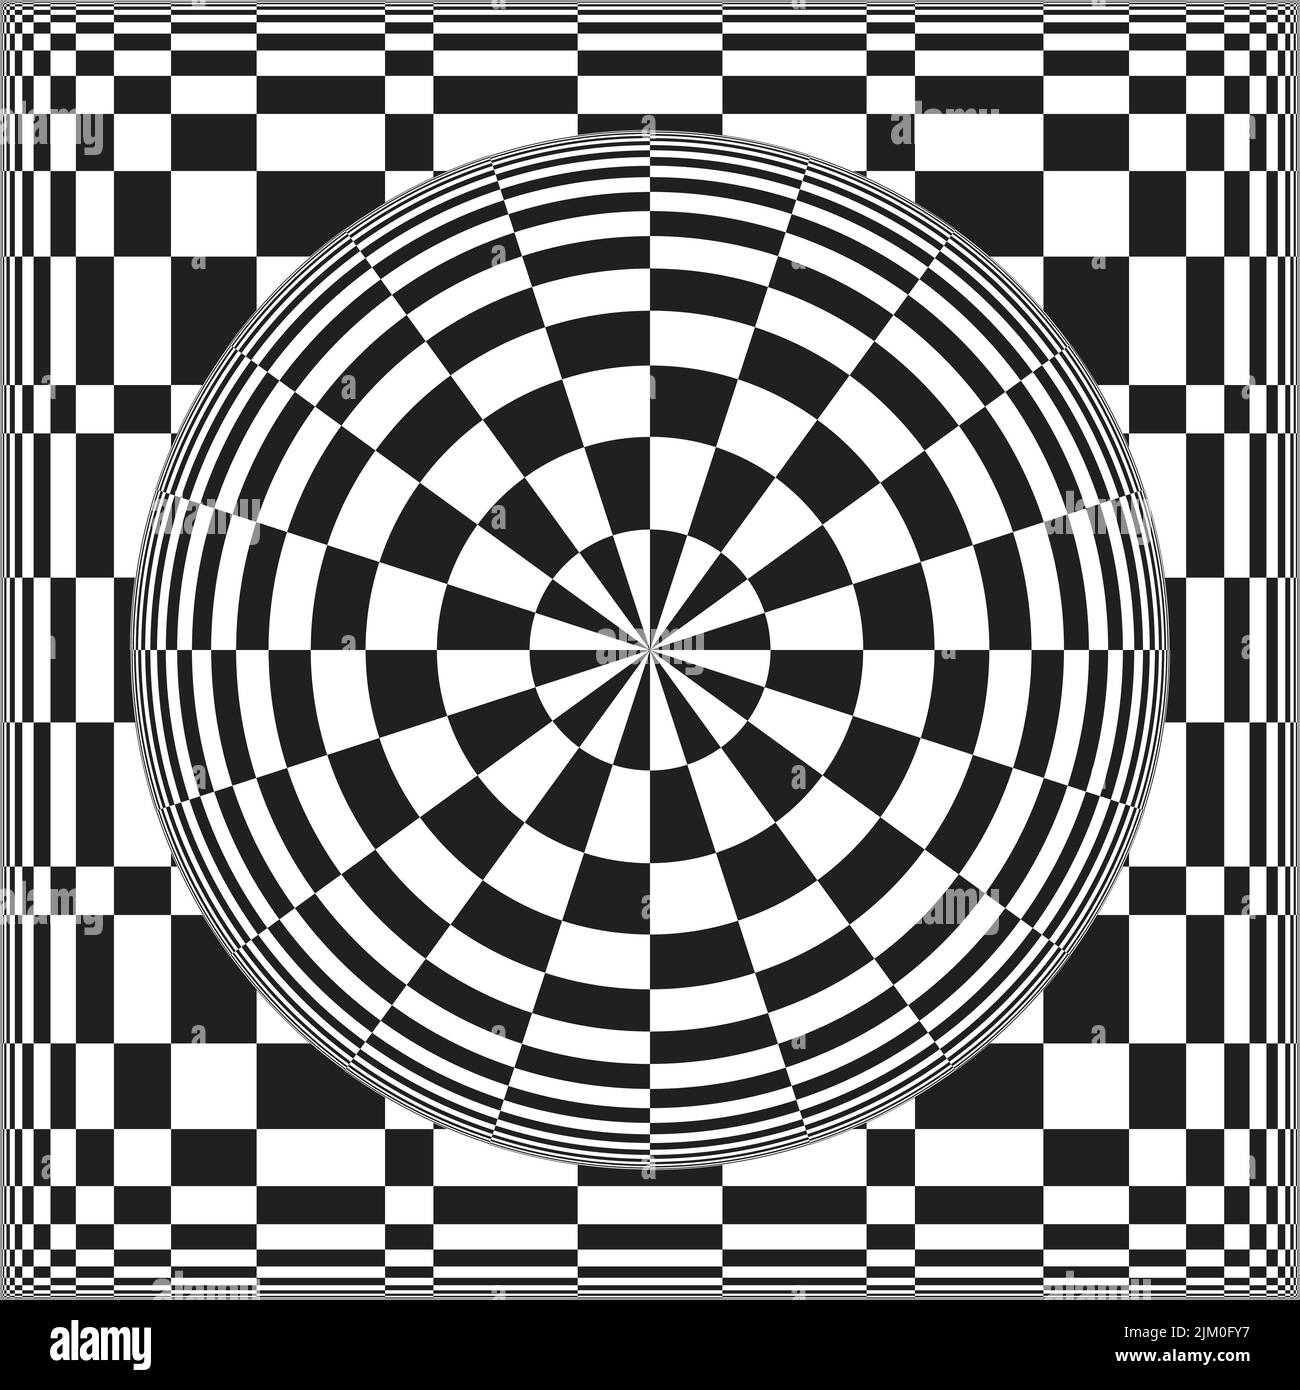 Schwarz-Weiß-Kontrast erzeugt eine optische Täuschung von 3D. Geometrisches, verzerrtes Schachbrettmuster. Zieltaste auf Schachbrett. Psychedelisch und Trend Stock Vektor